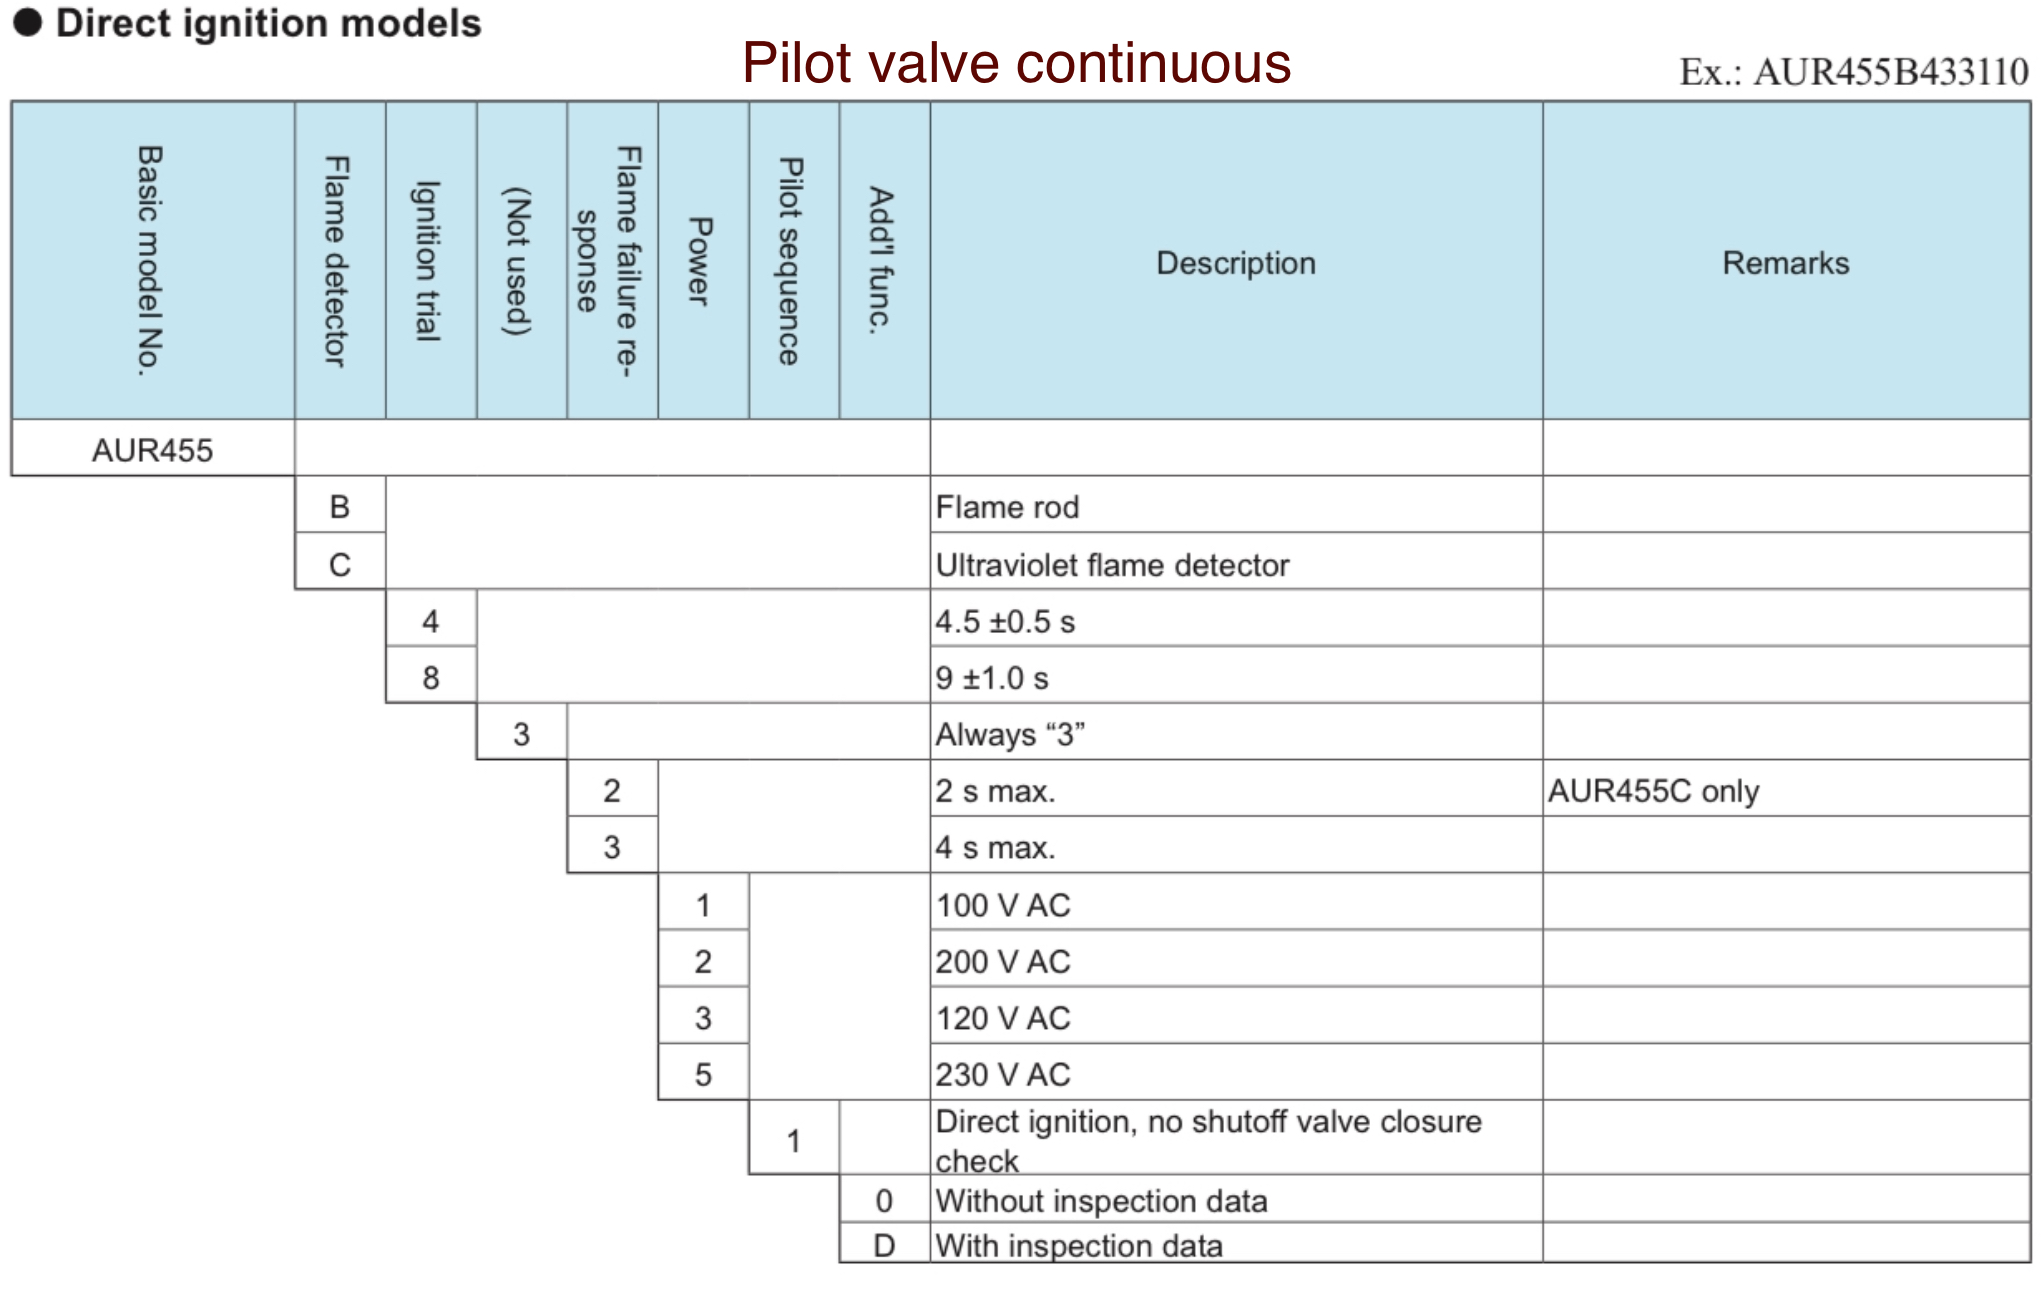 aur455 direct ignition models pilot valve continuous